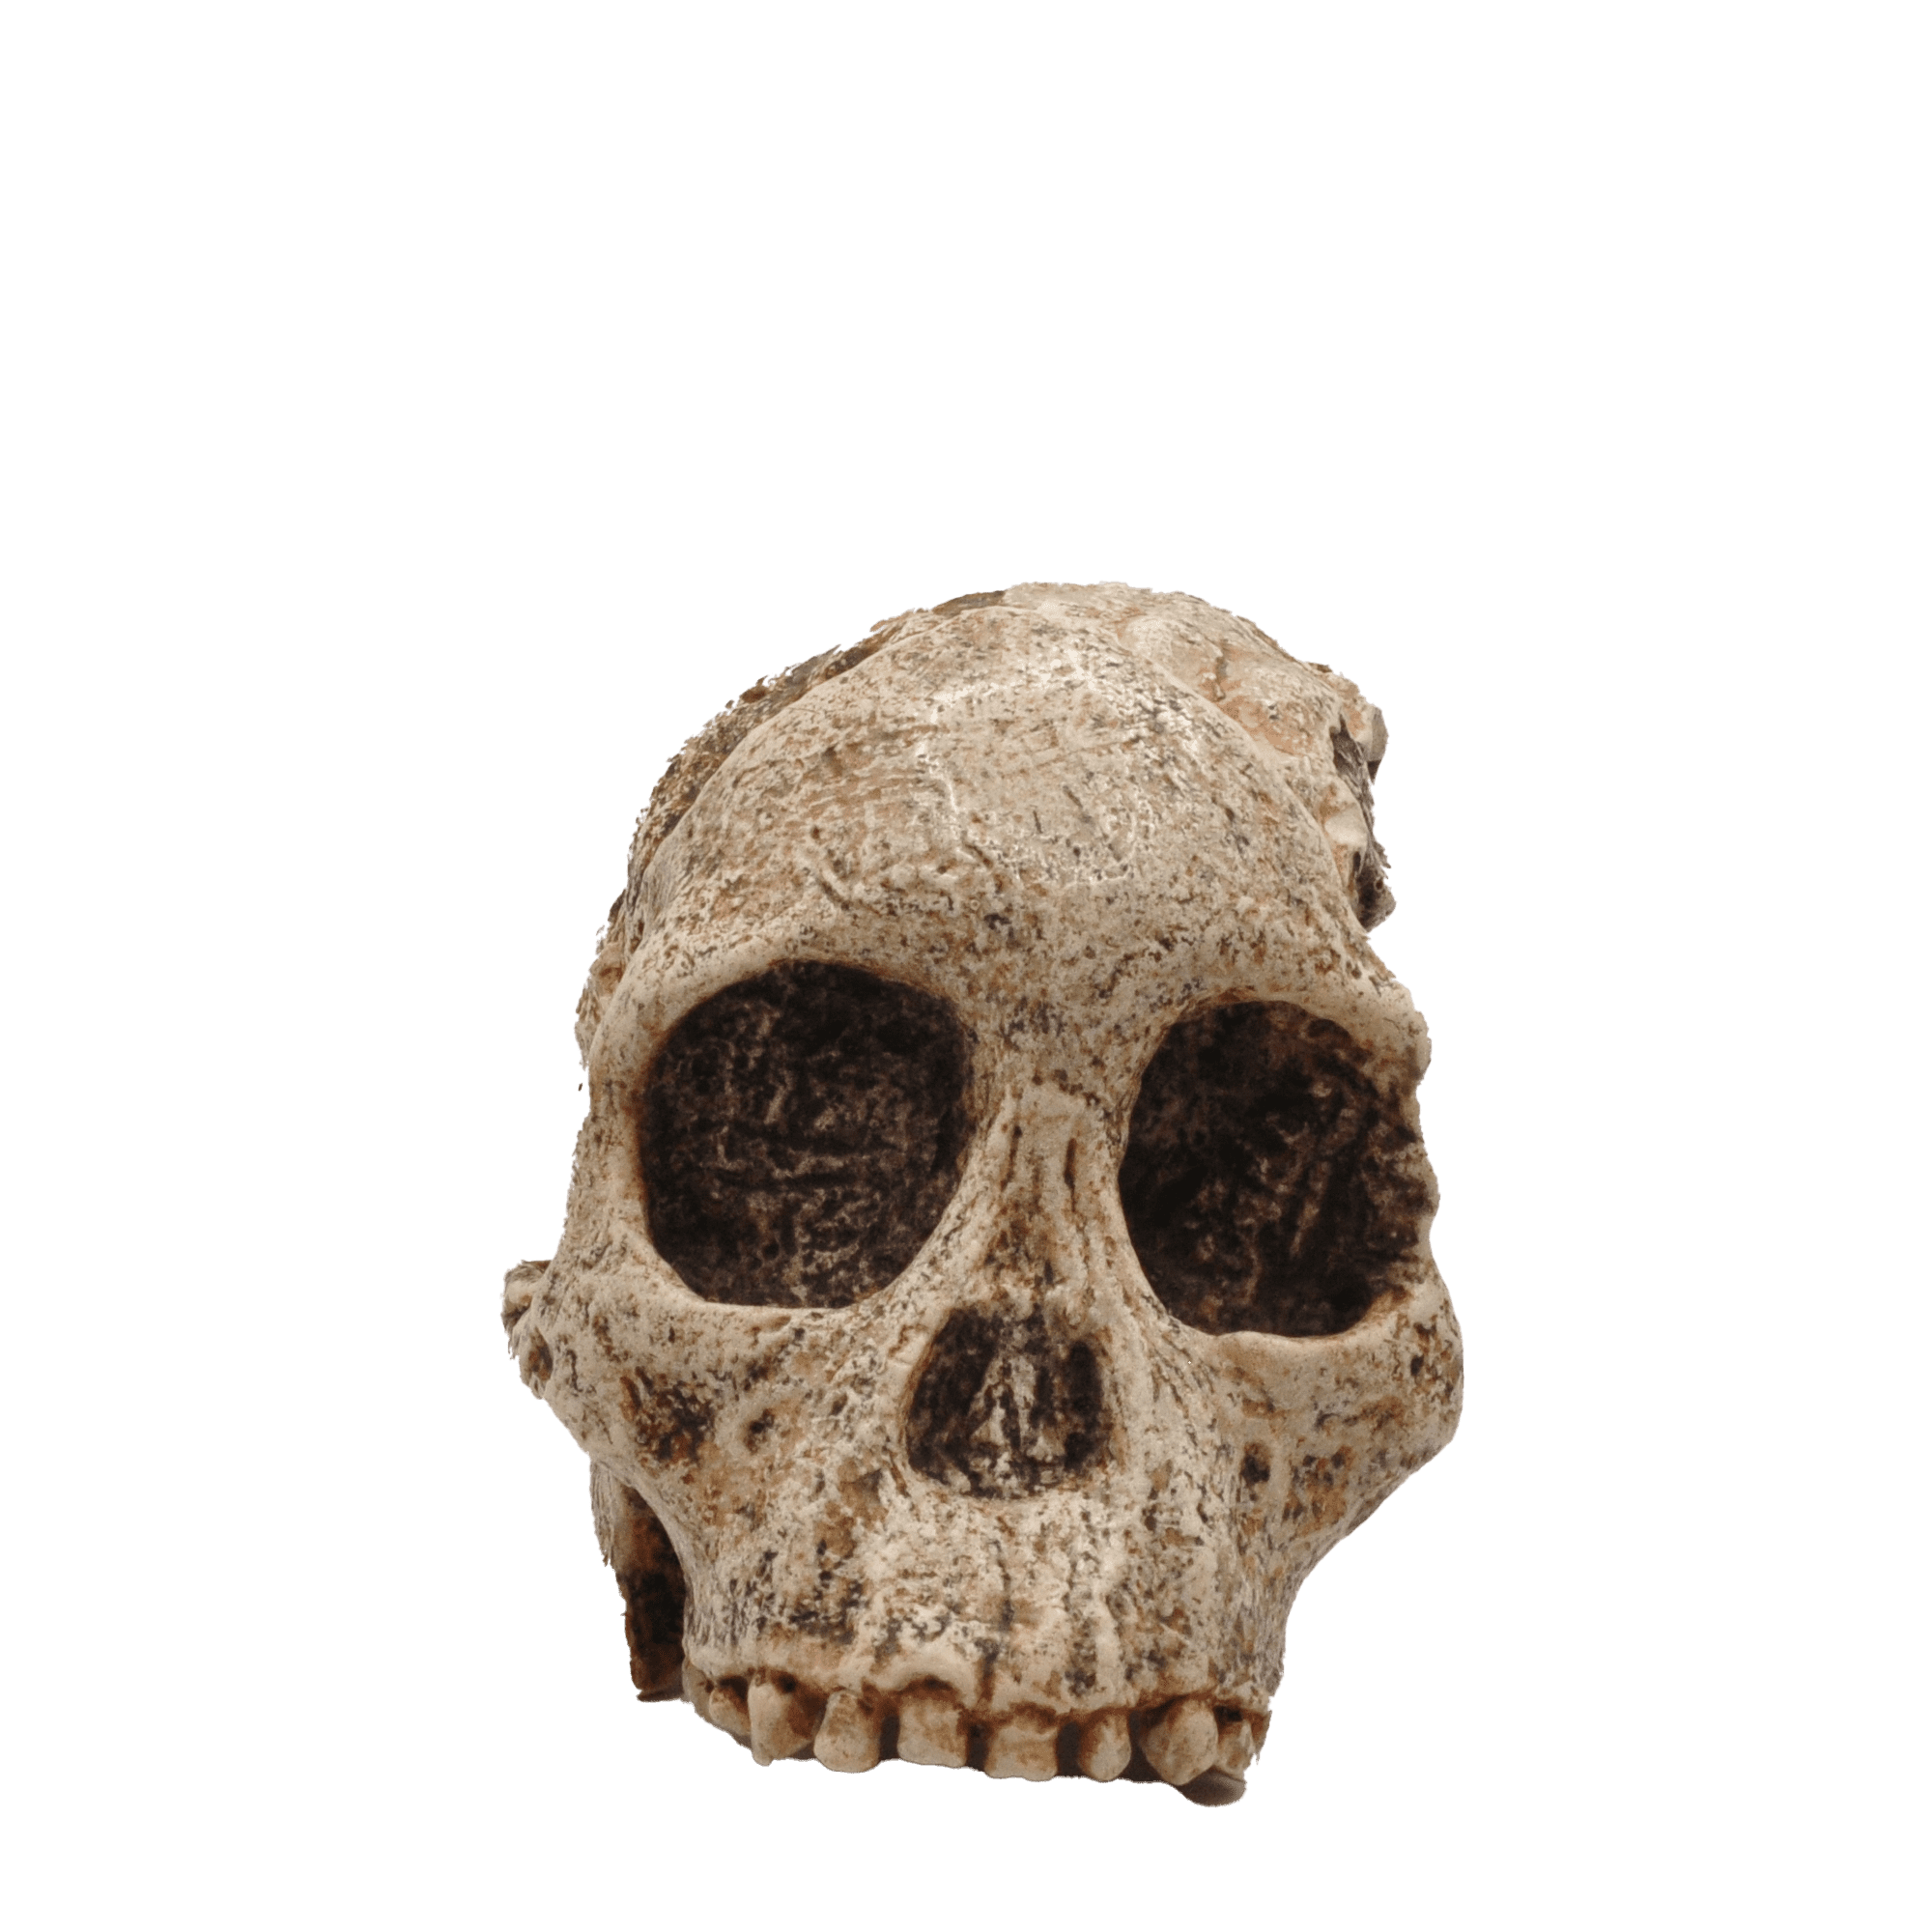 Crâne d'un Australopithèques - Australopithecus africanus